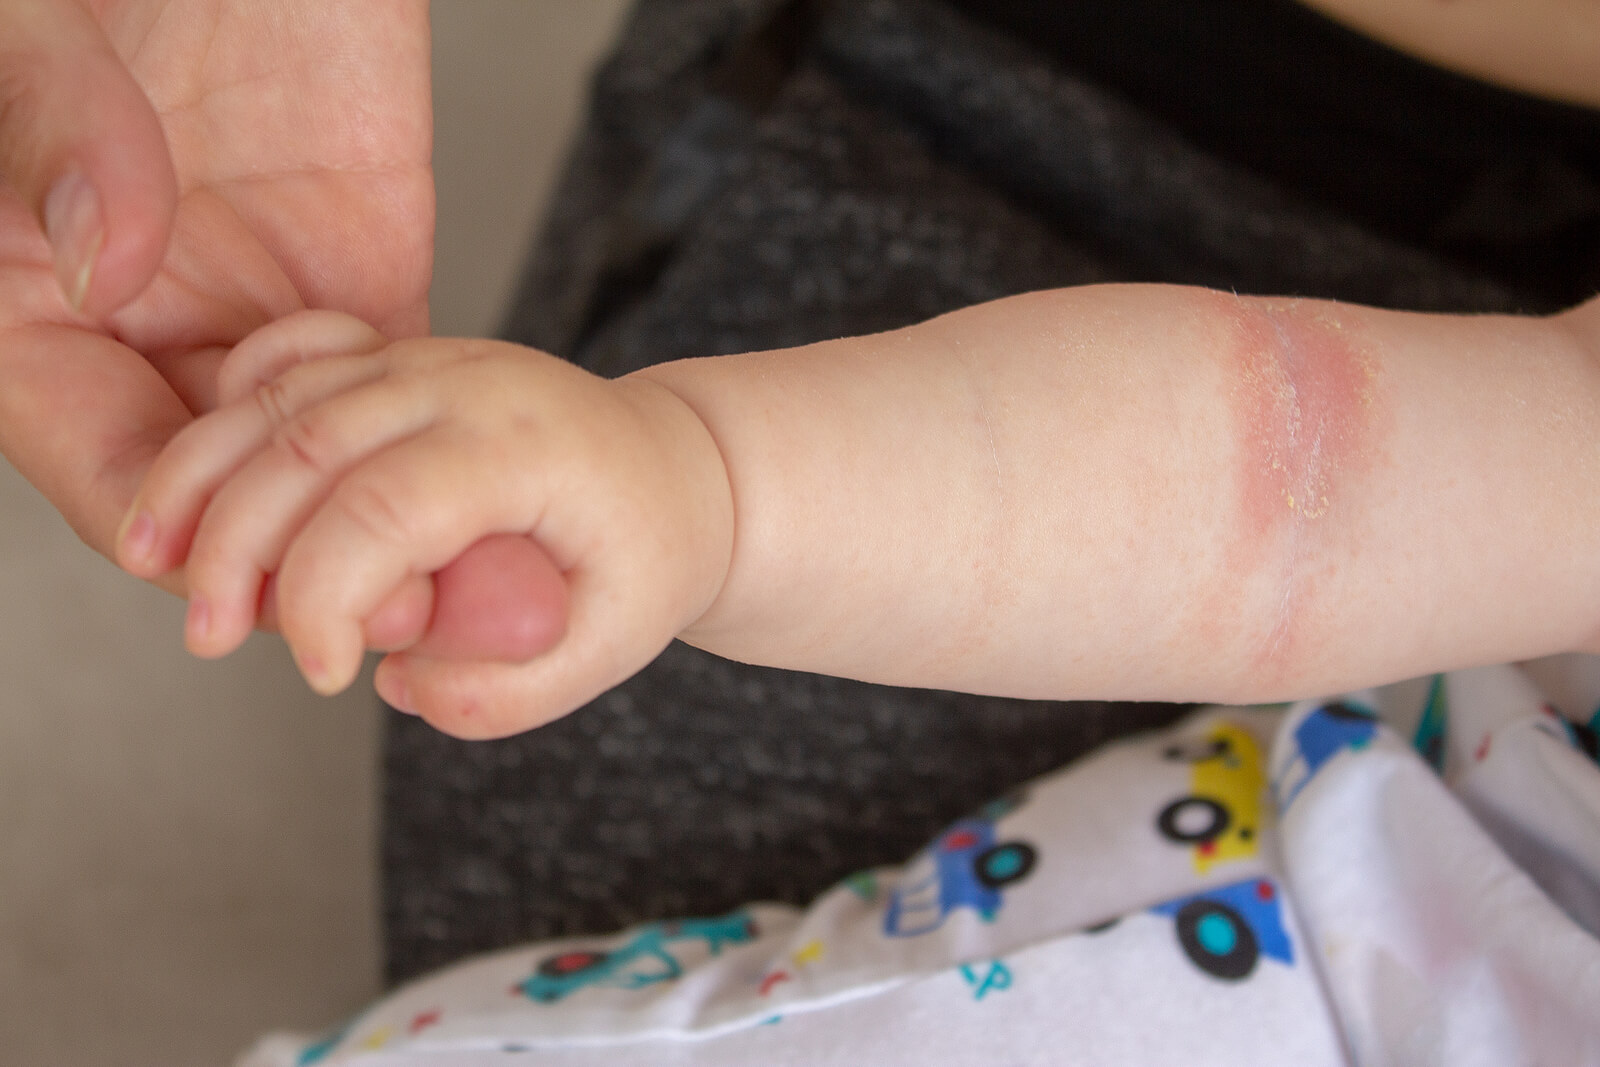 Bébé avec eczéma au bras dû à l'une des mycoses cutanées.